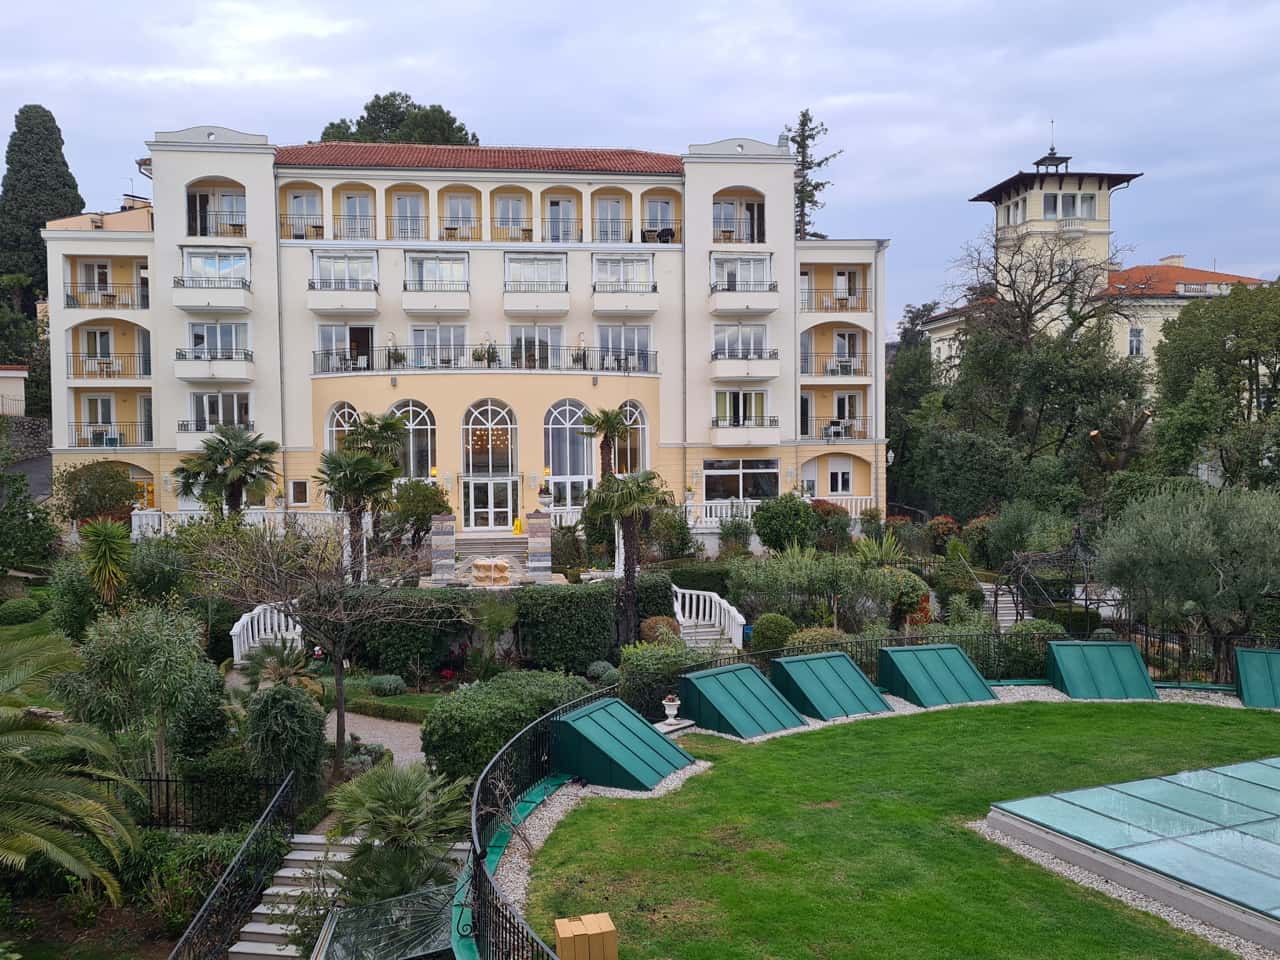 das Hotel Miramar in Opatija, Kroatien